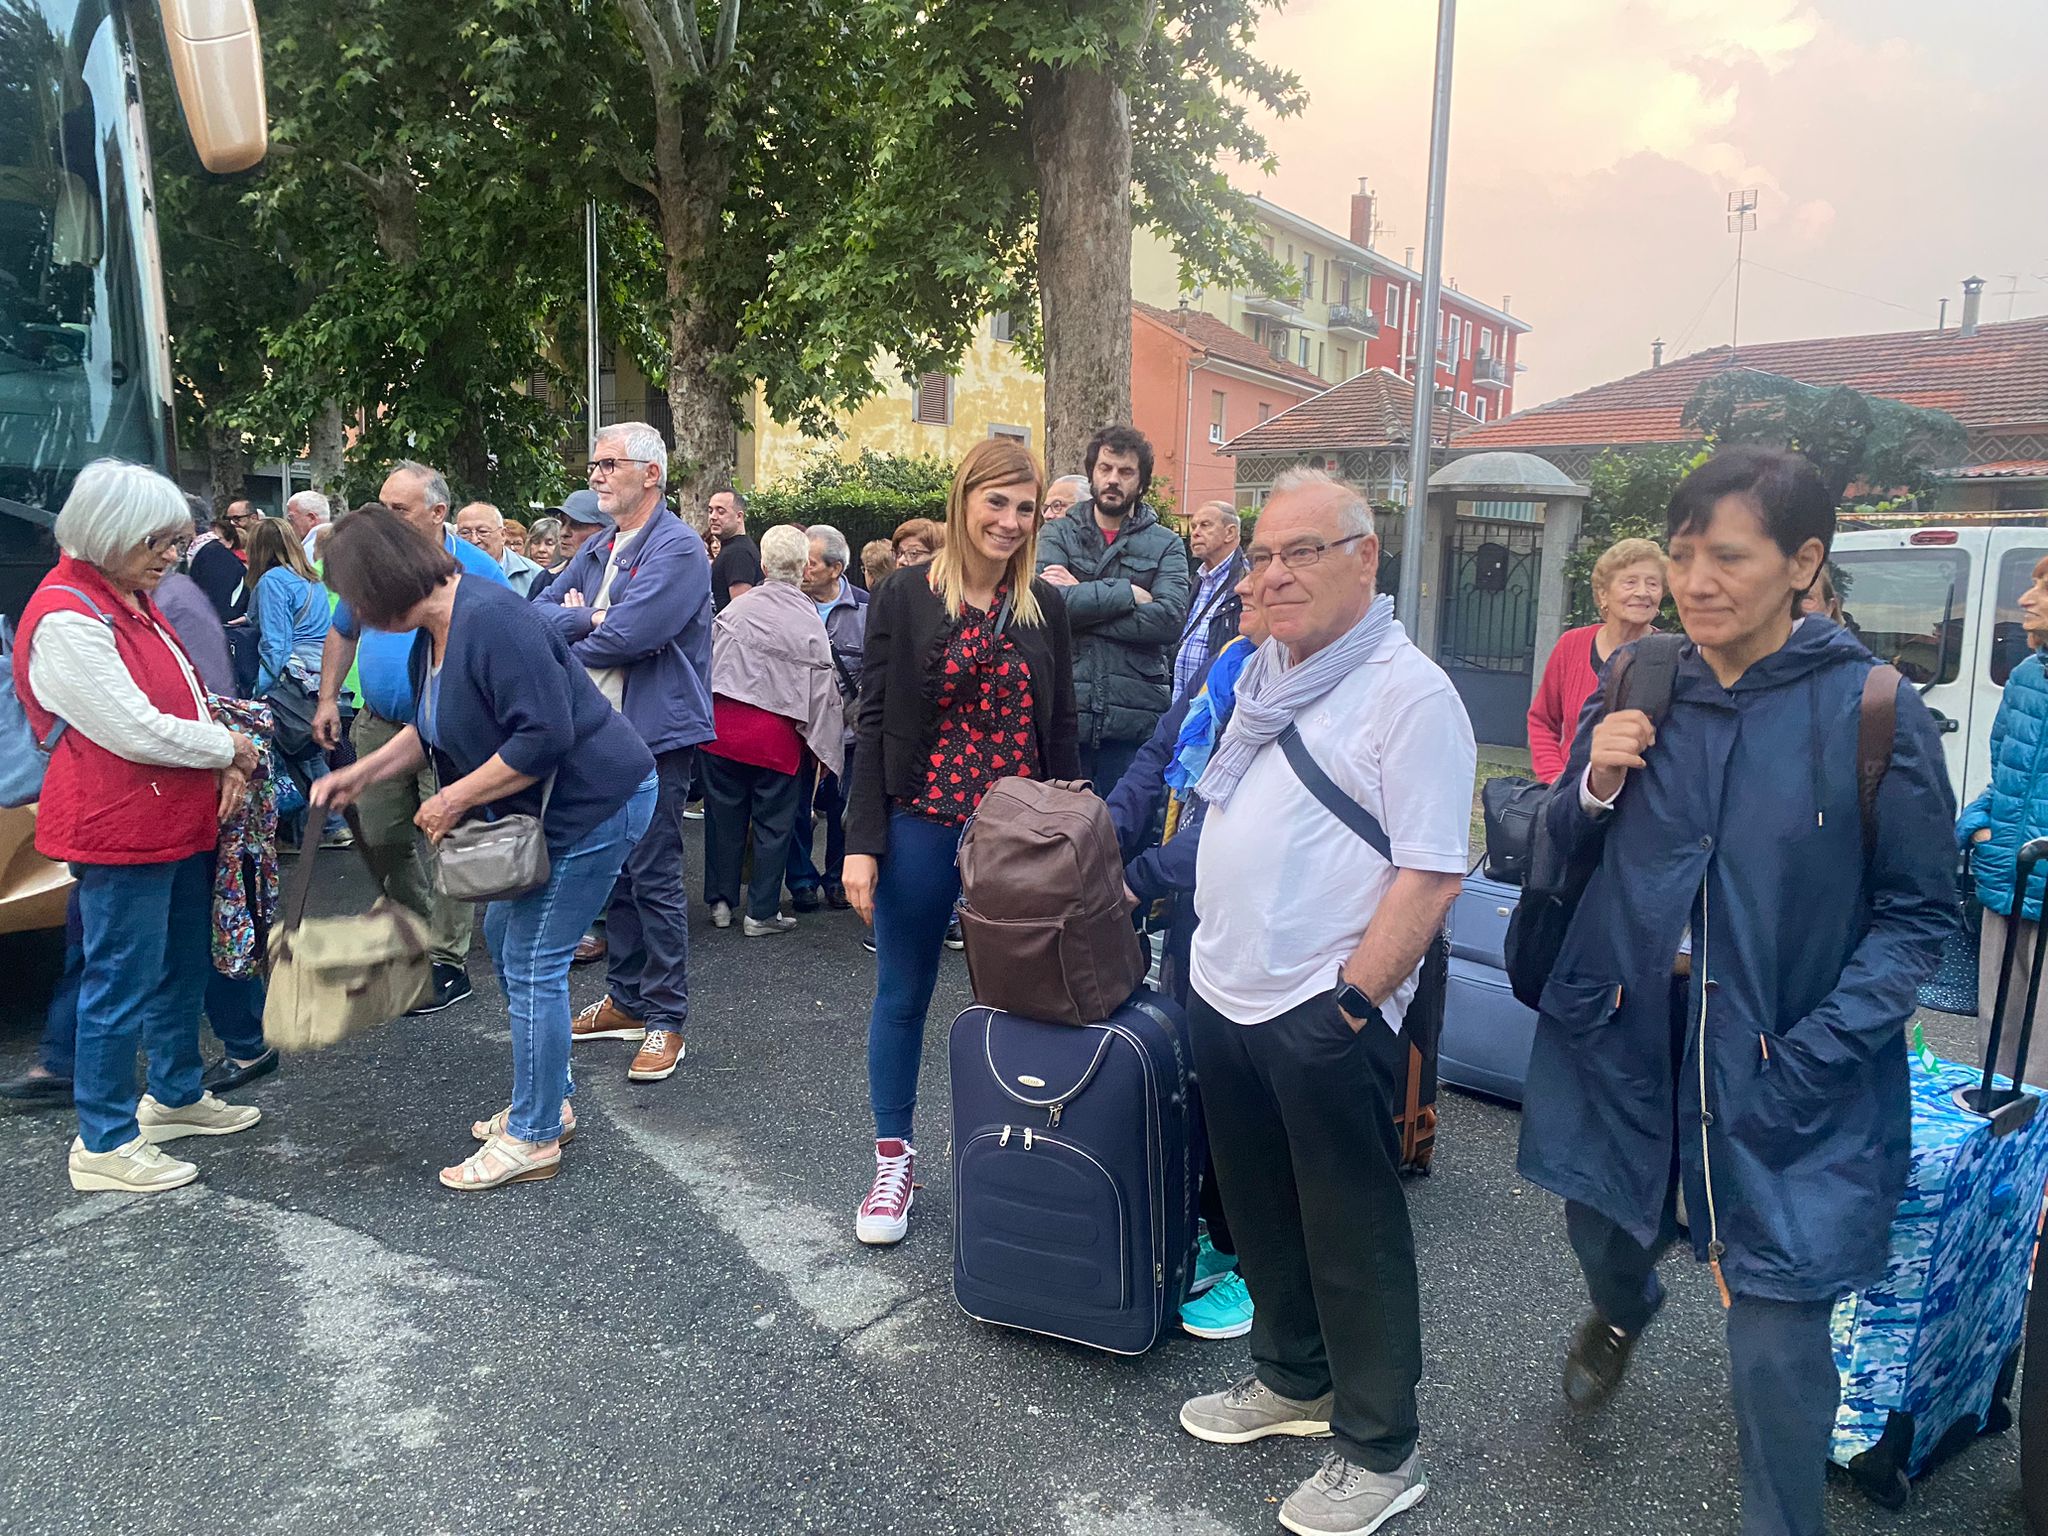 SOGGIORNI MARINI – Da Moncalieri e Nichelino partono gli over 55 per le vacanze in Romagna, aiutando anche il turismo